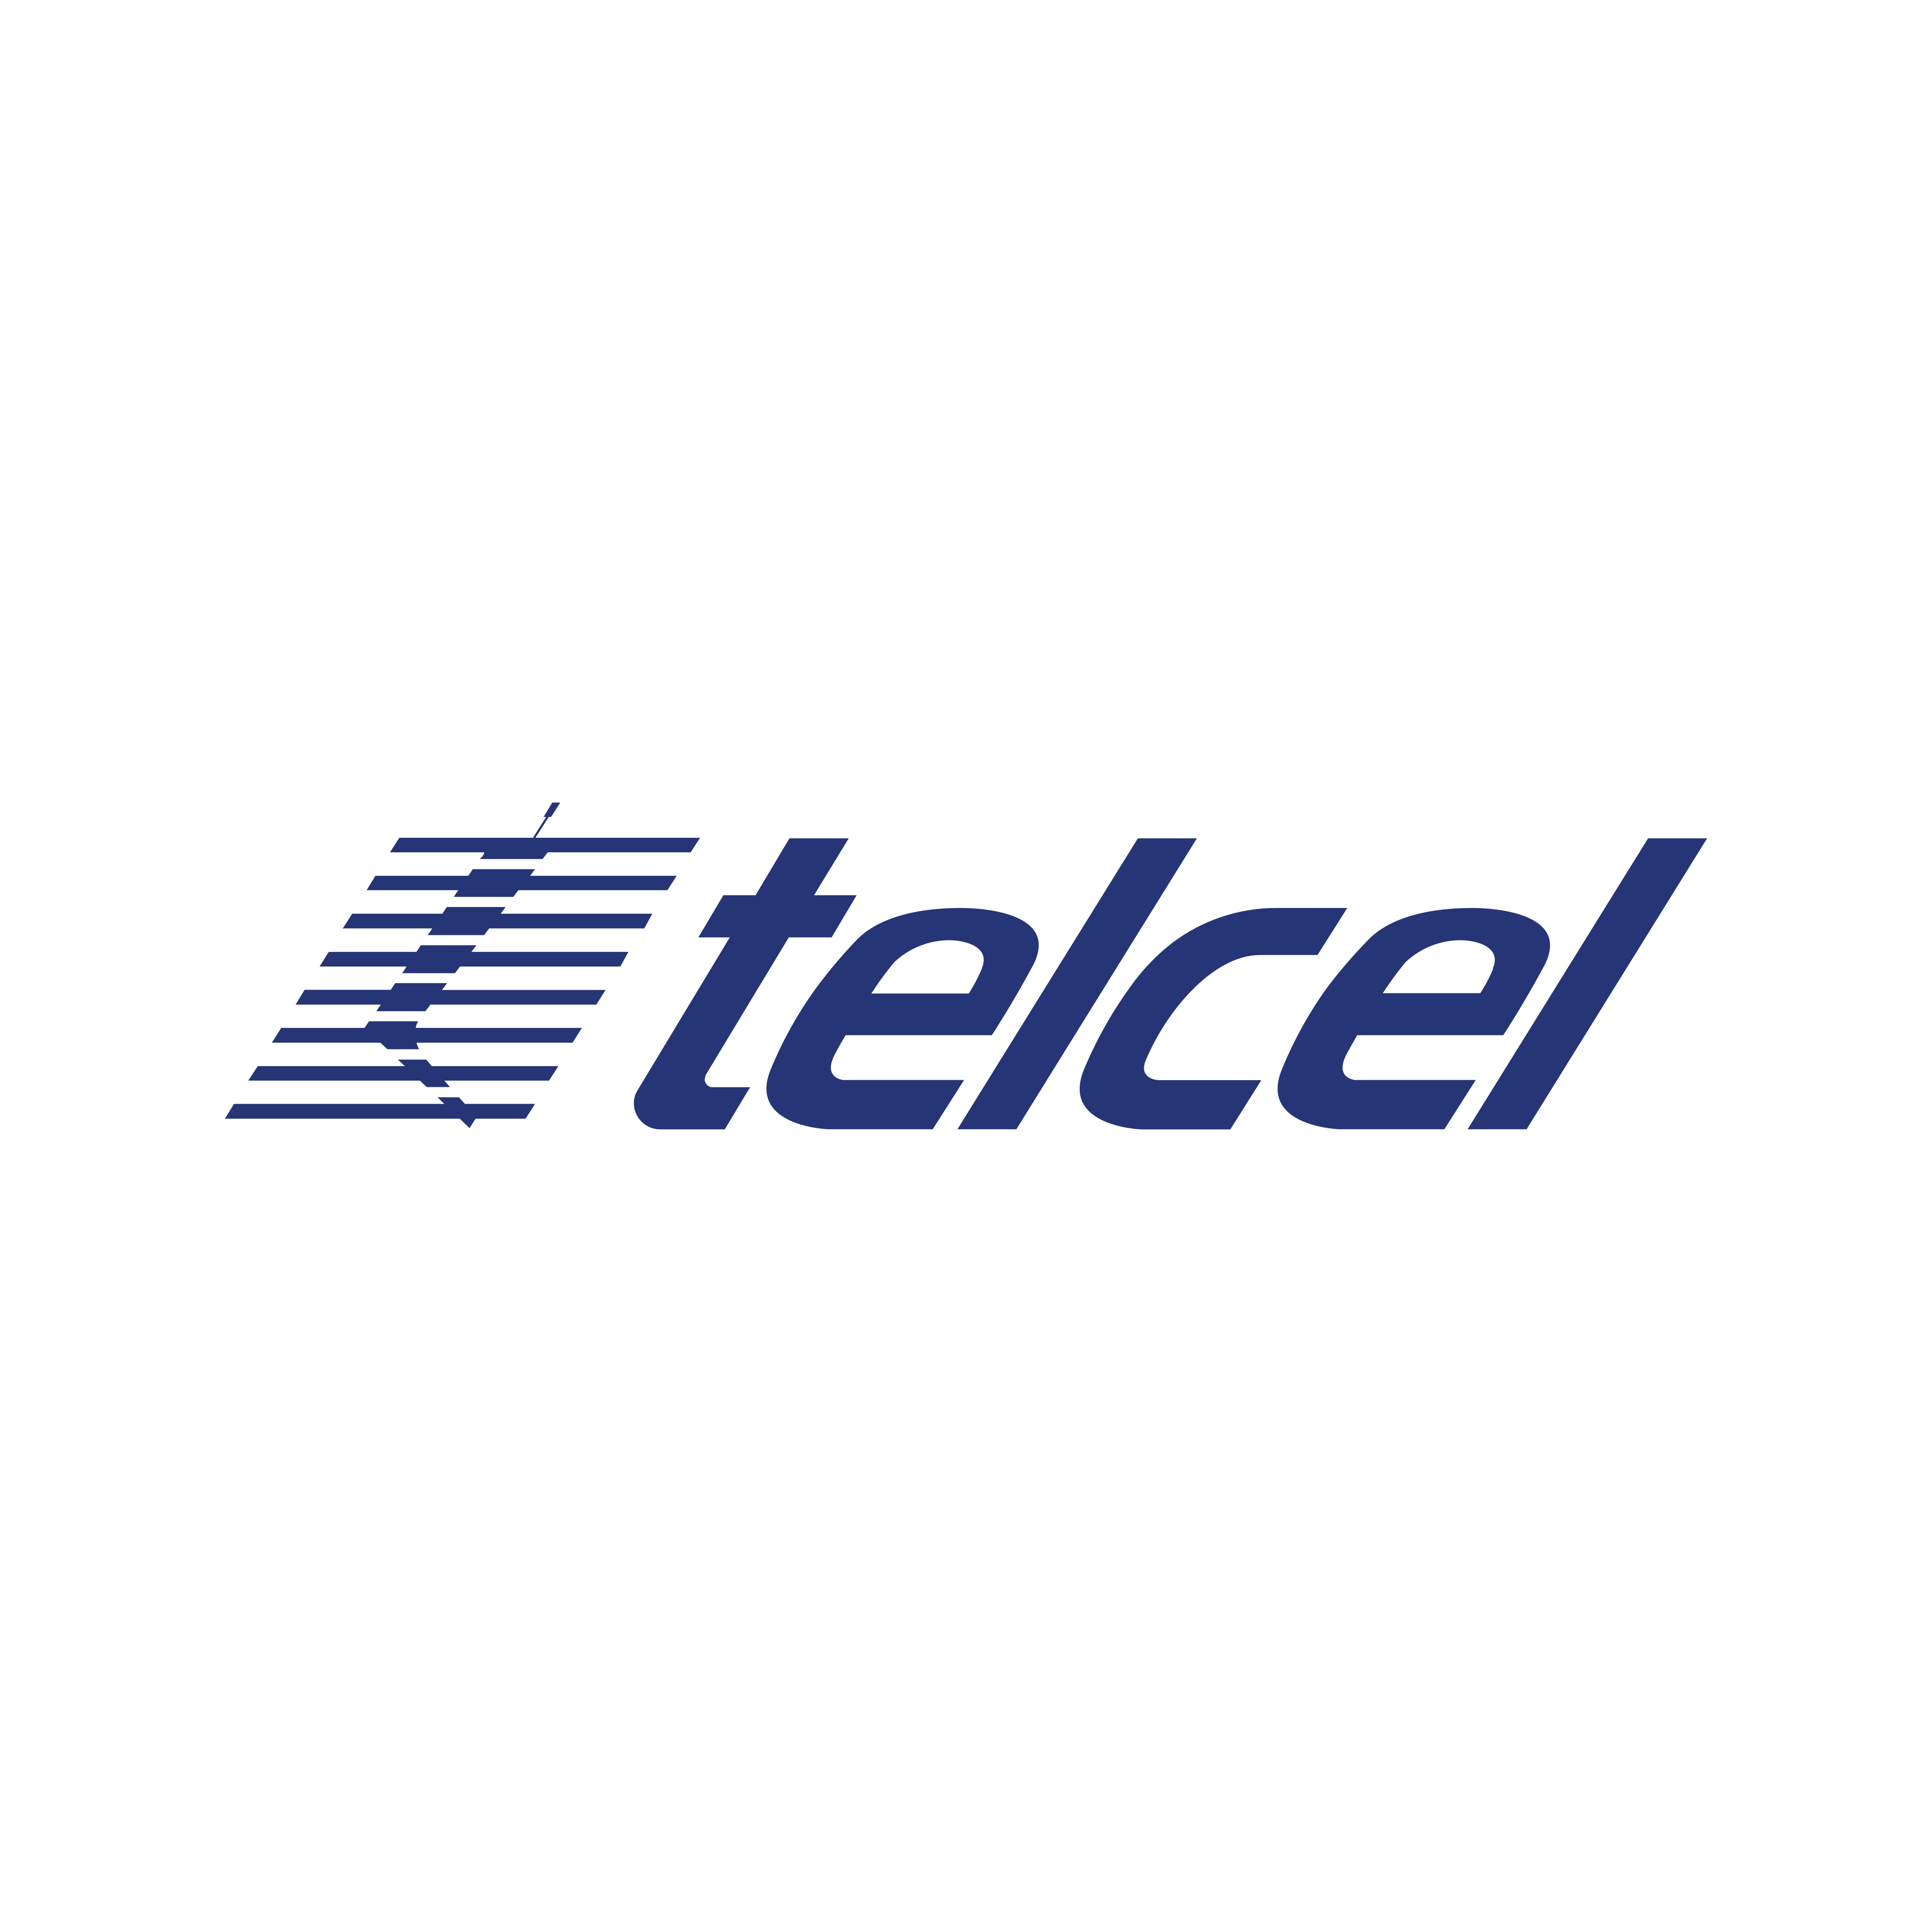 telcel logo 0 - Telcel Logo